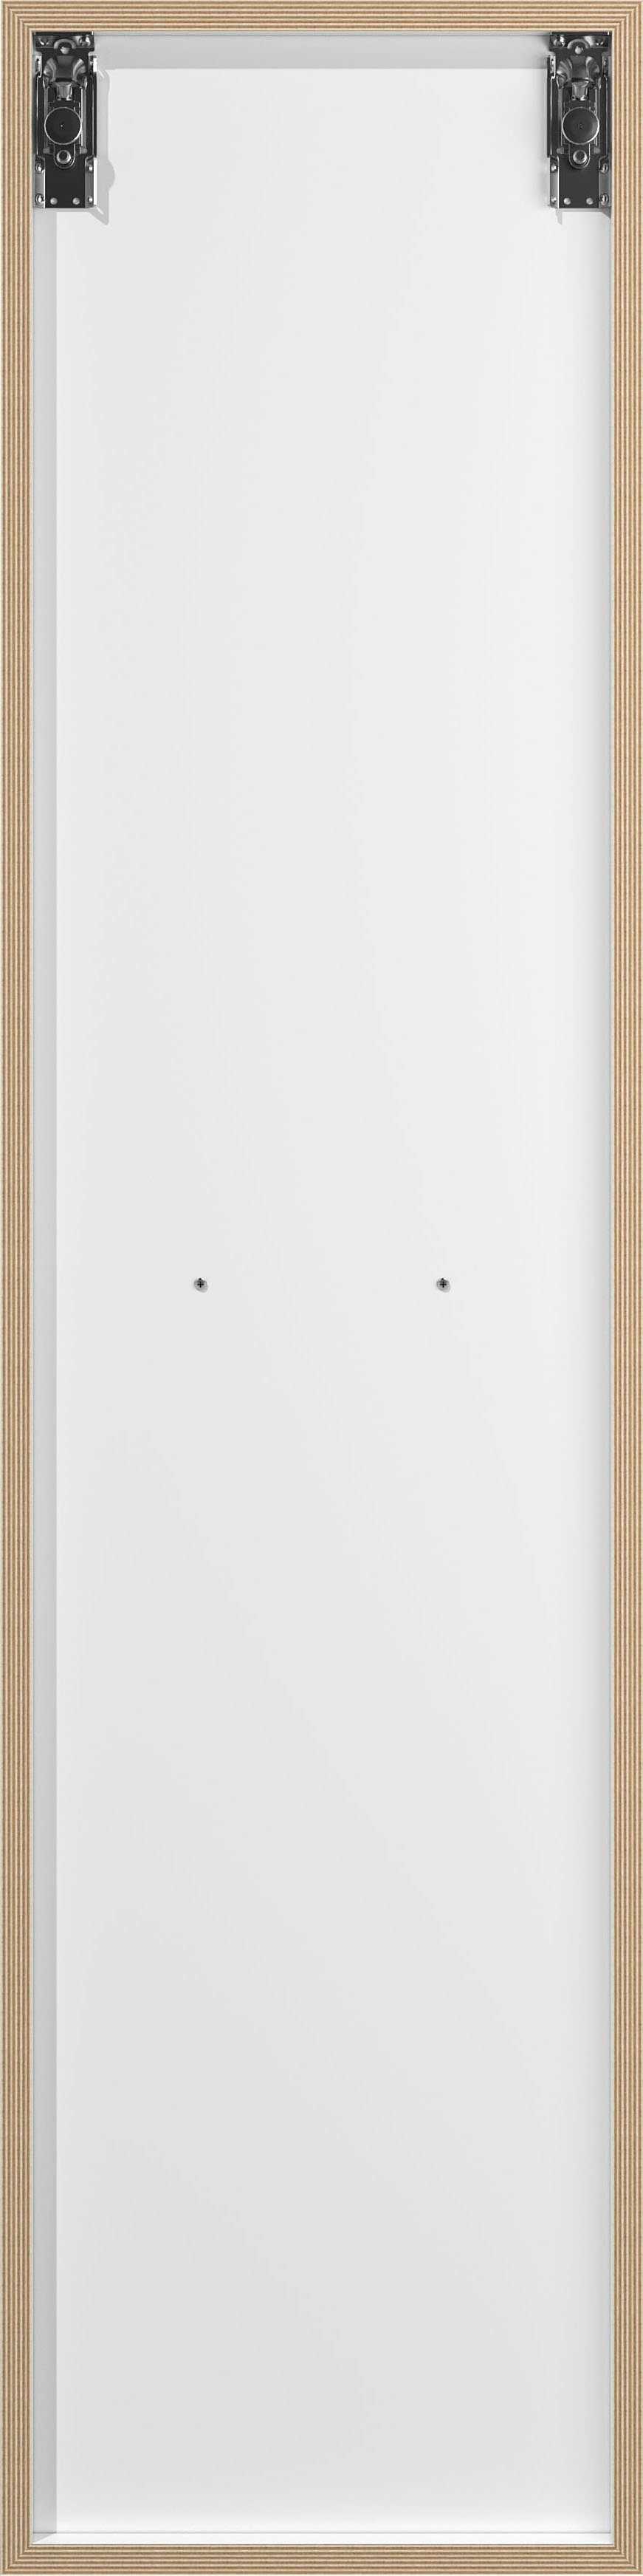 Müller SMALL LIVING Mehrzweckschrank VERTICO Hochschrank Bau optimal einer weiß Serie VERTICAL Wohnwand zum Vertiko, passend zur TWO